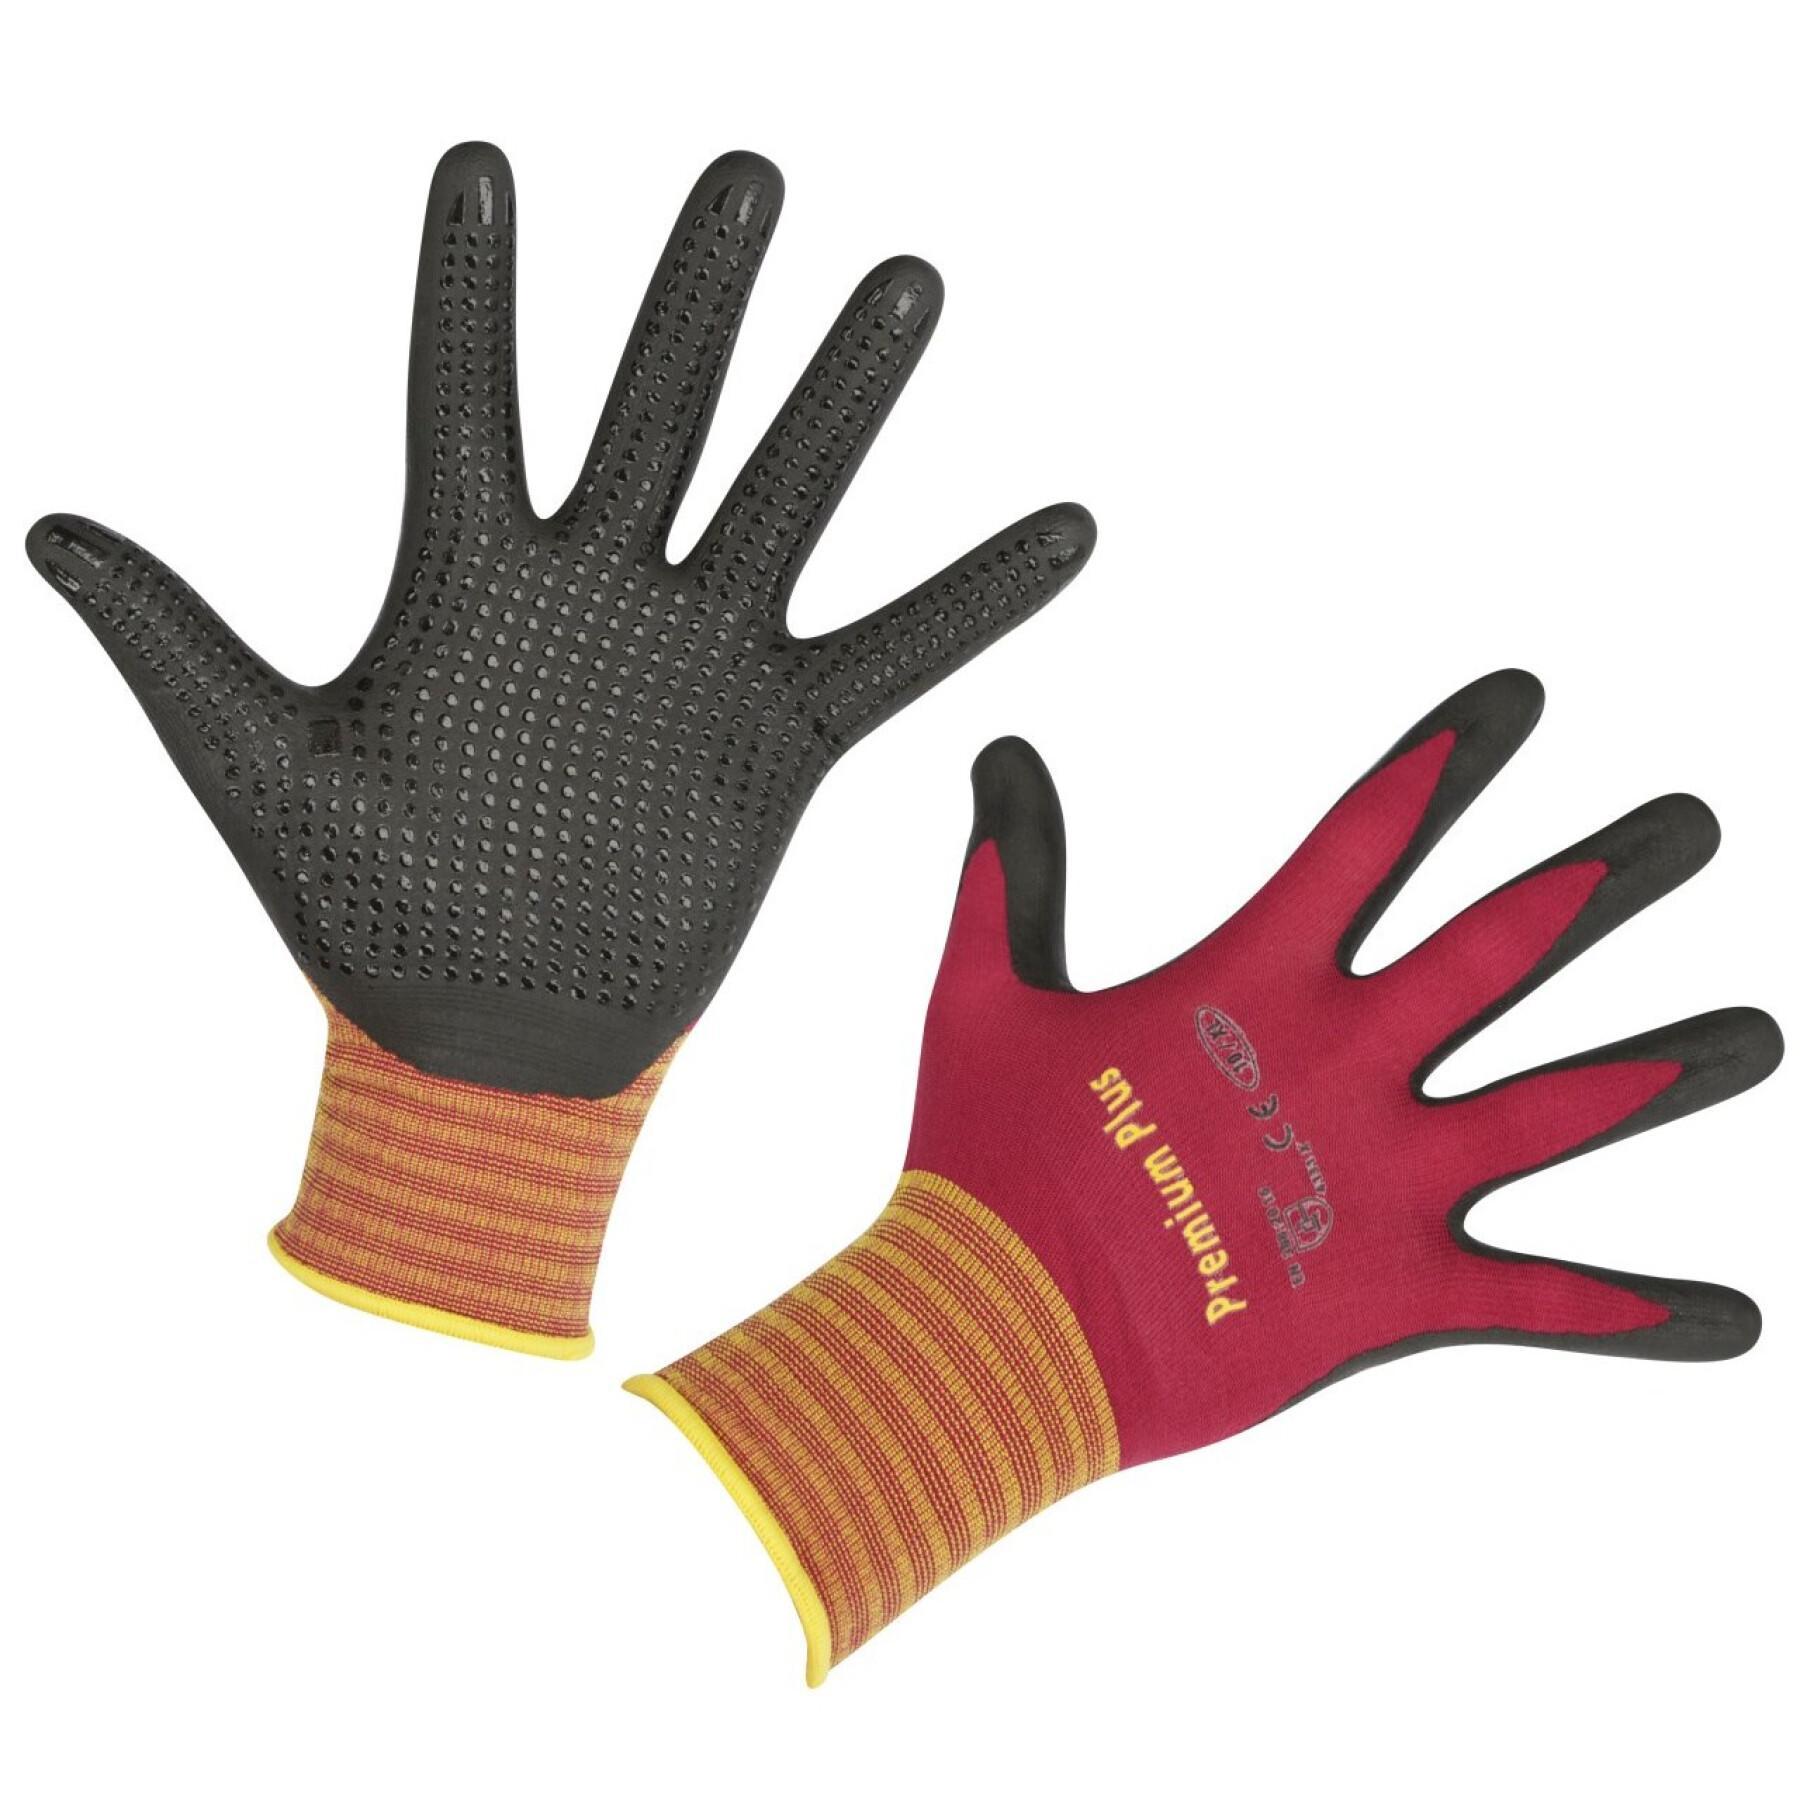 Gardening gloves Kerbl Premium Plus